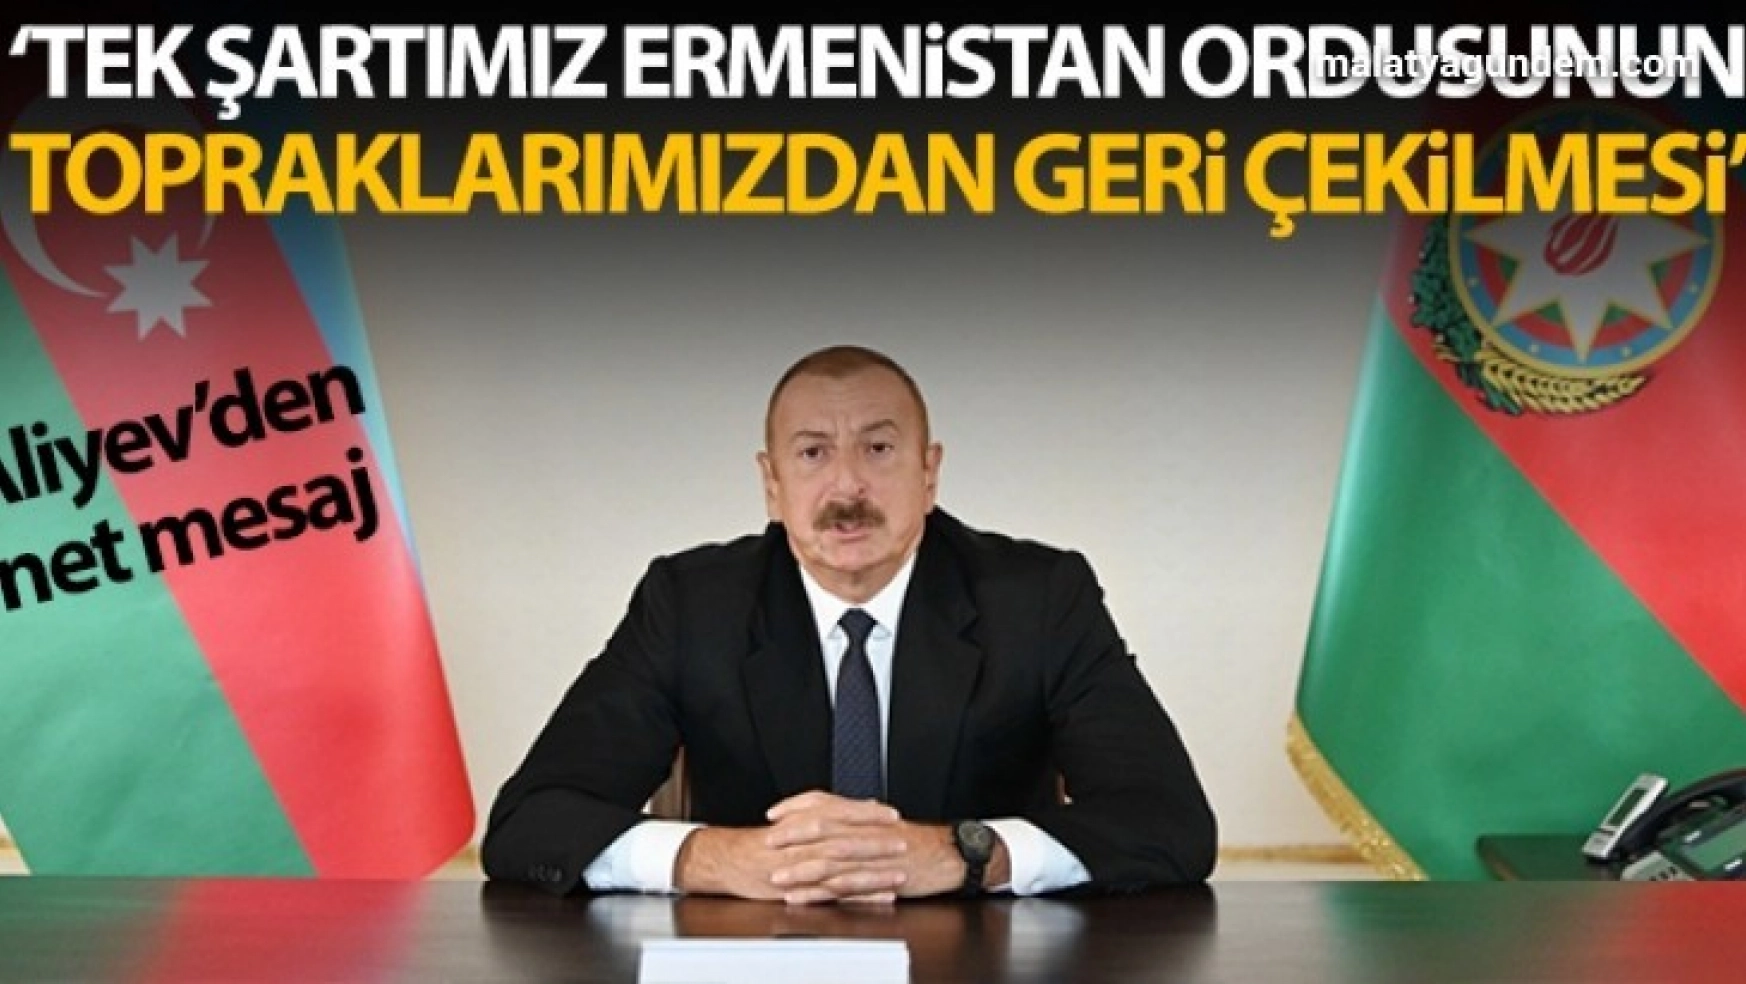 Azerbaycan Cumhurbaşkanı Aliyev: 'Tek şartımız Ermenistan ordusunun topraklarımızdan geri çekilmesidir'